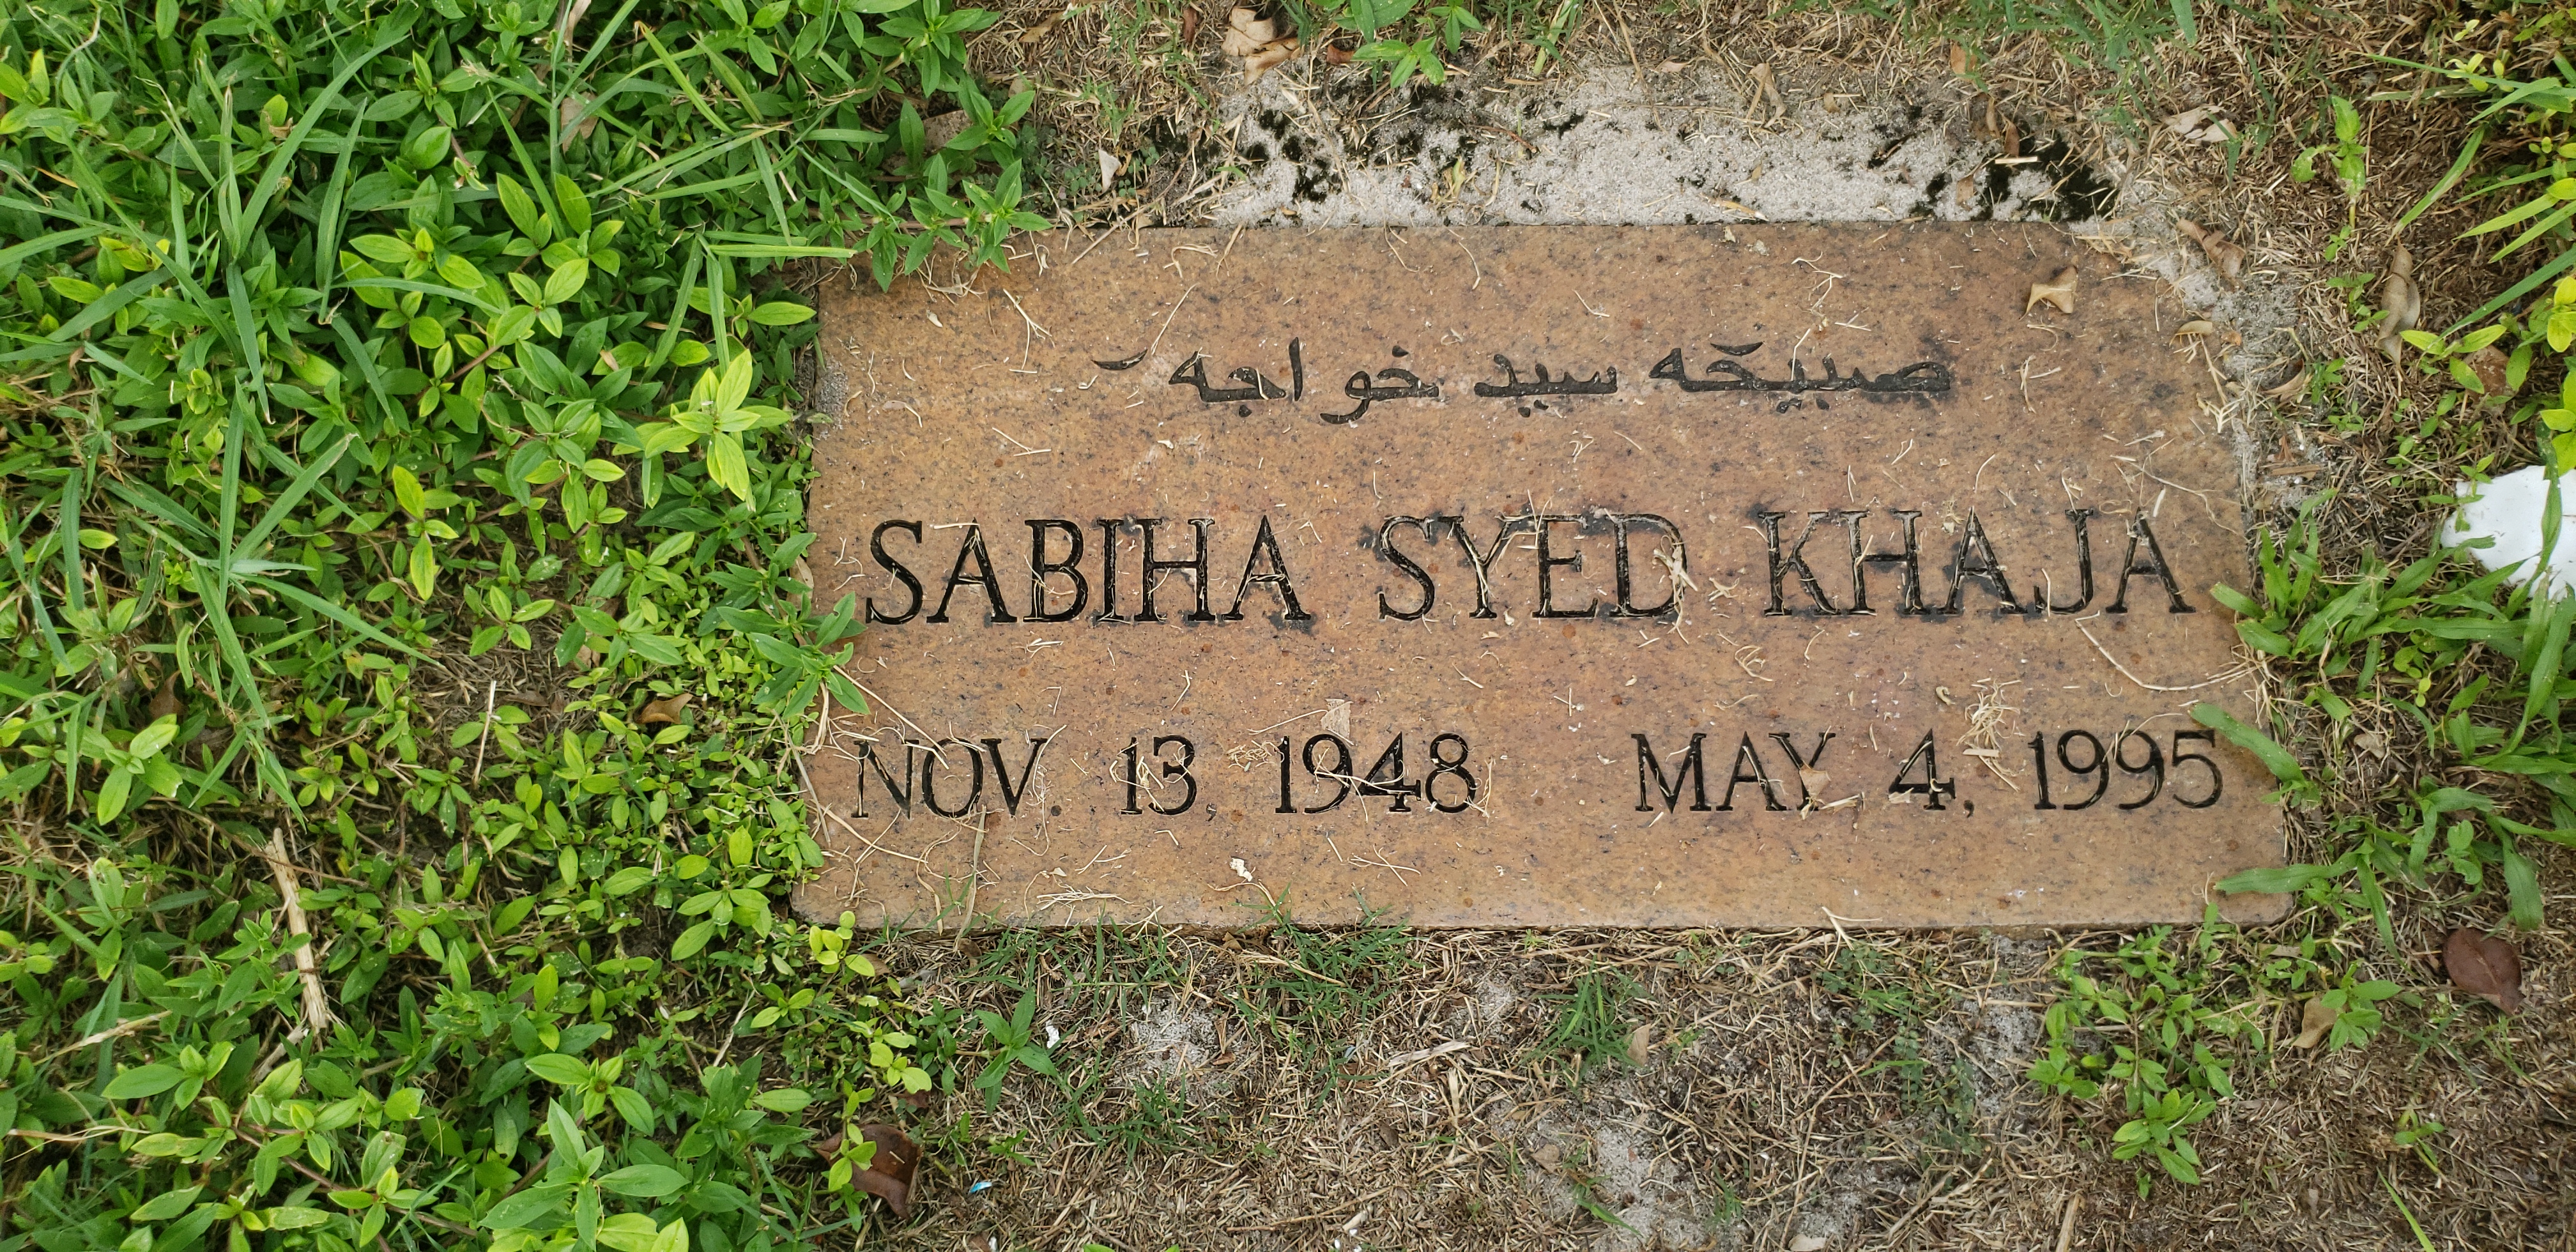 Sabiha Syed Khaja